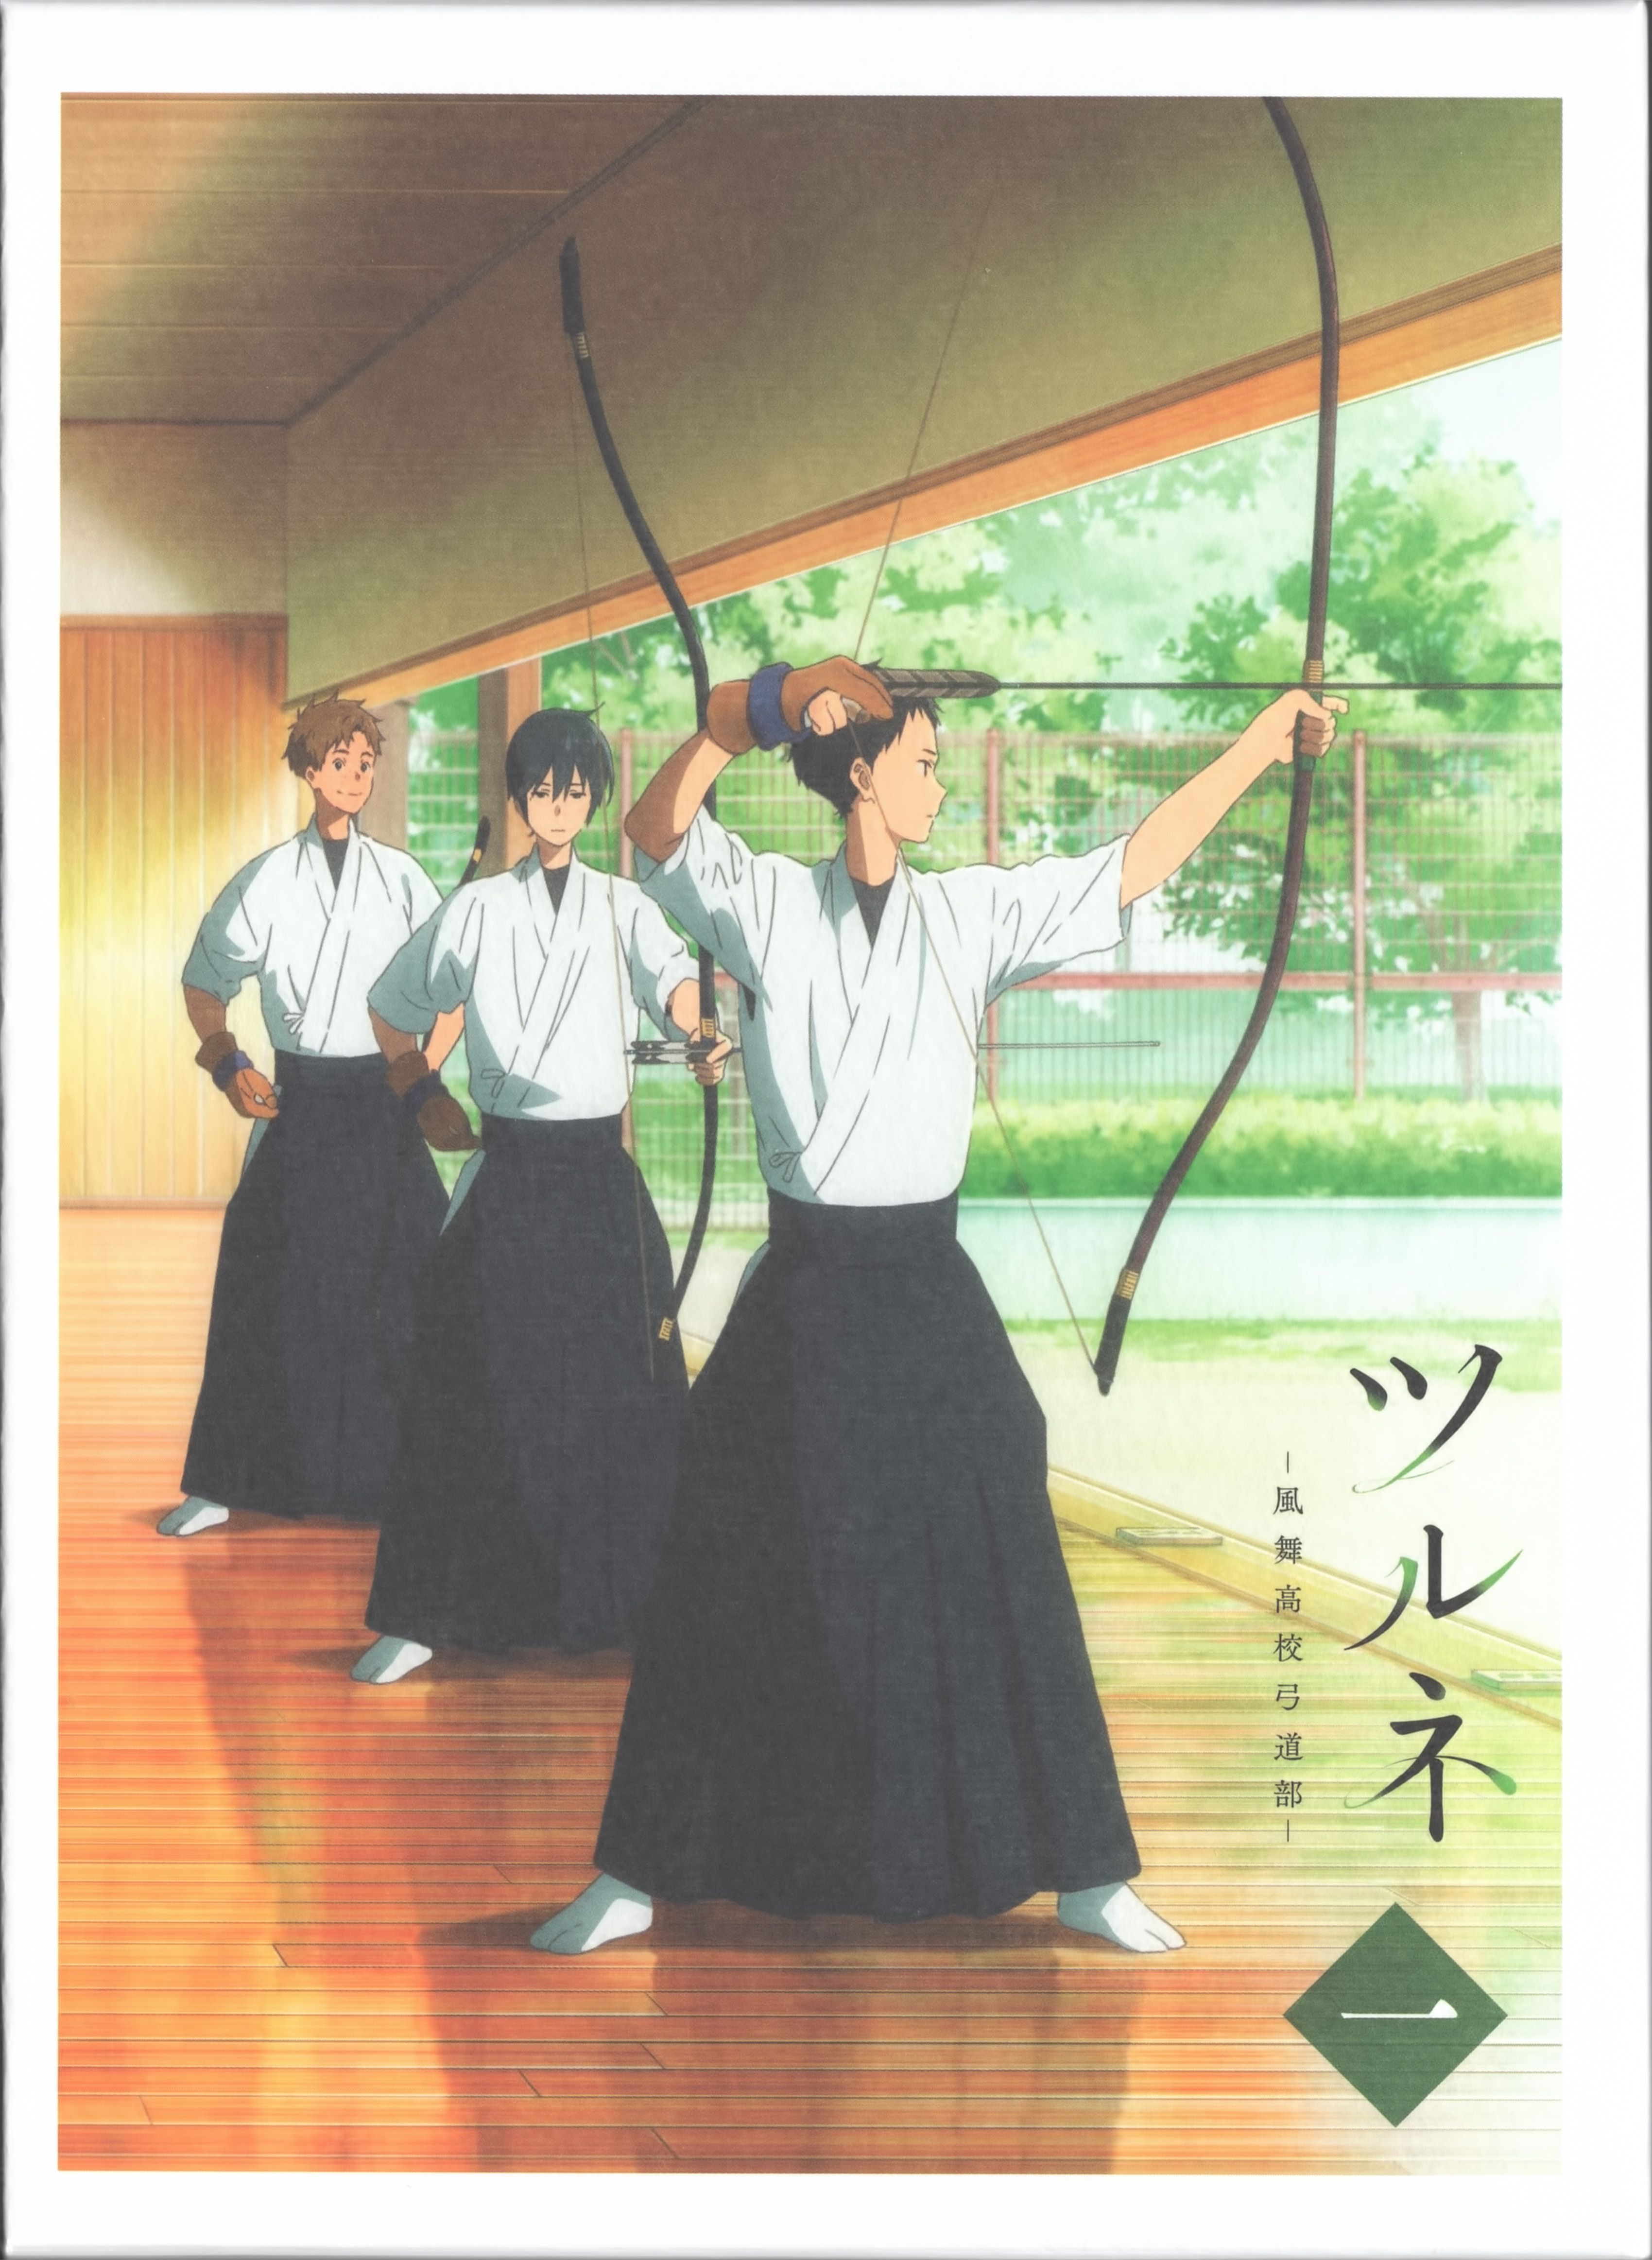 Tsurune: Kazemai Koukou Kyuudou Bu Anime Image Board